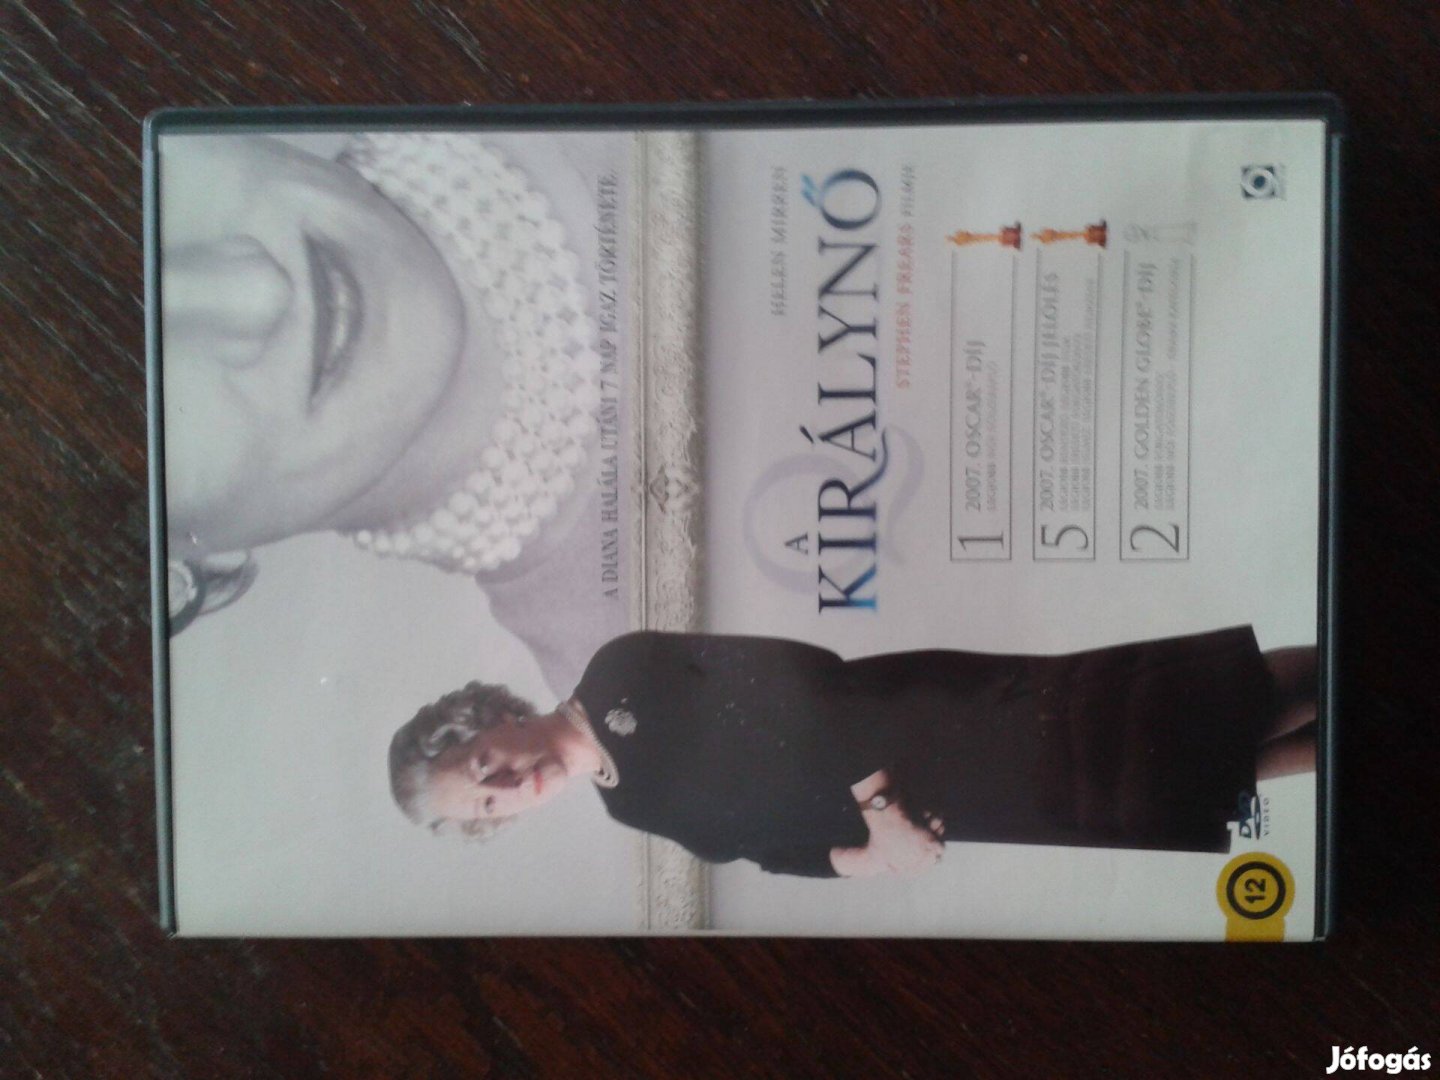 A királynö DVD